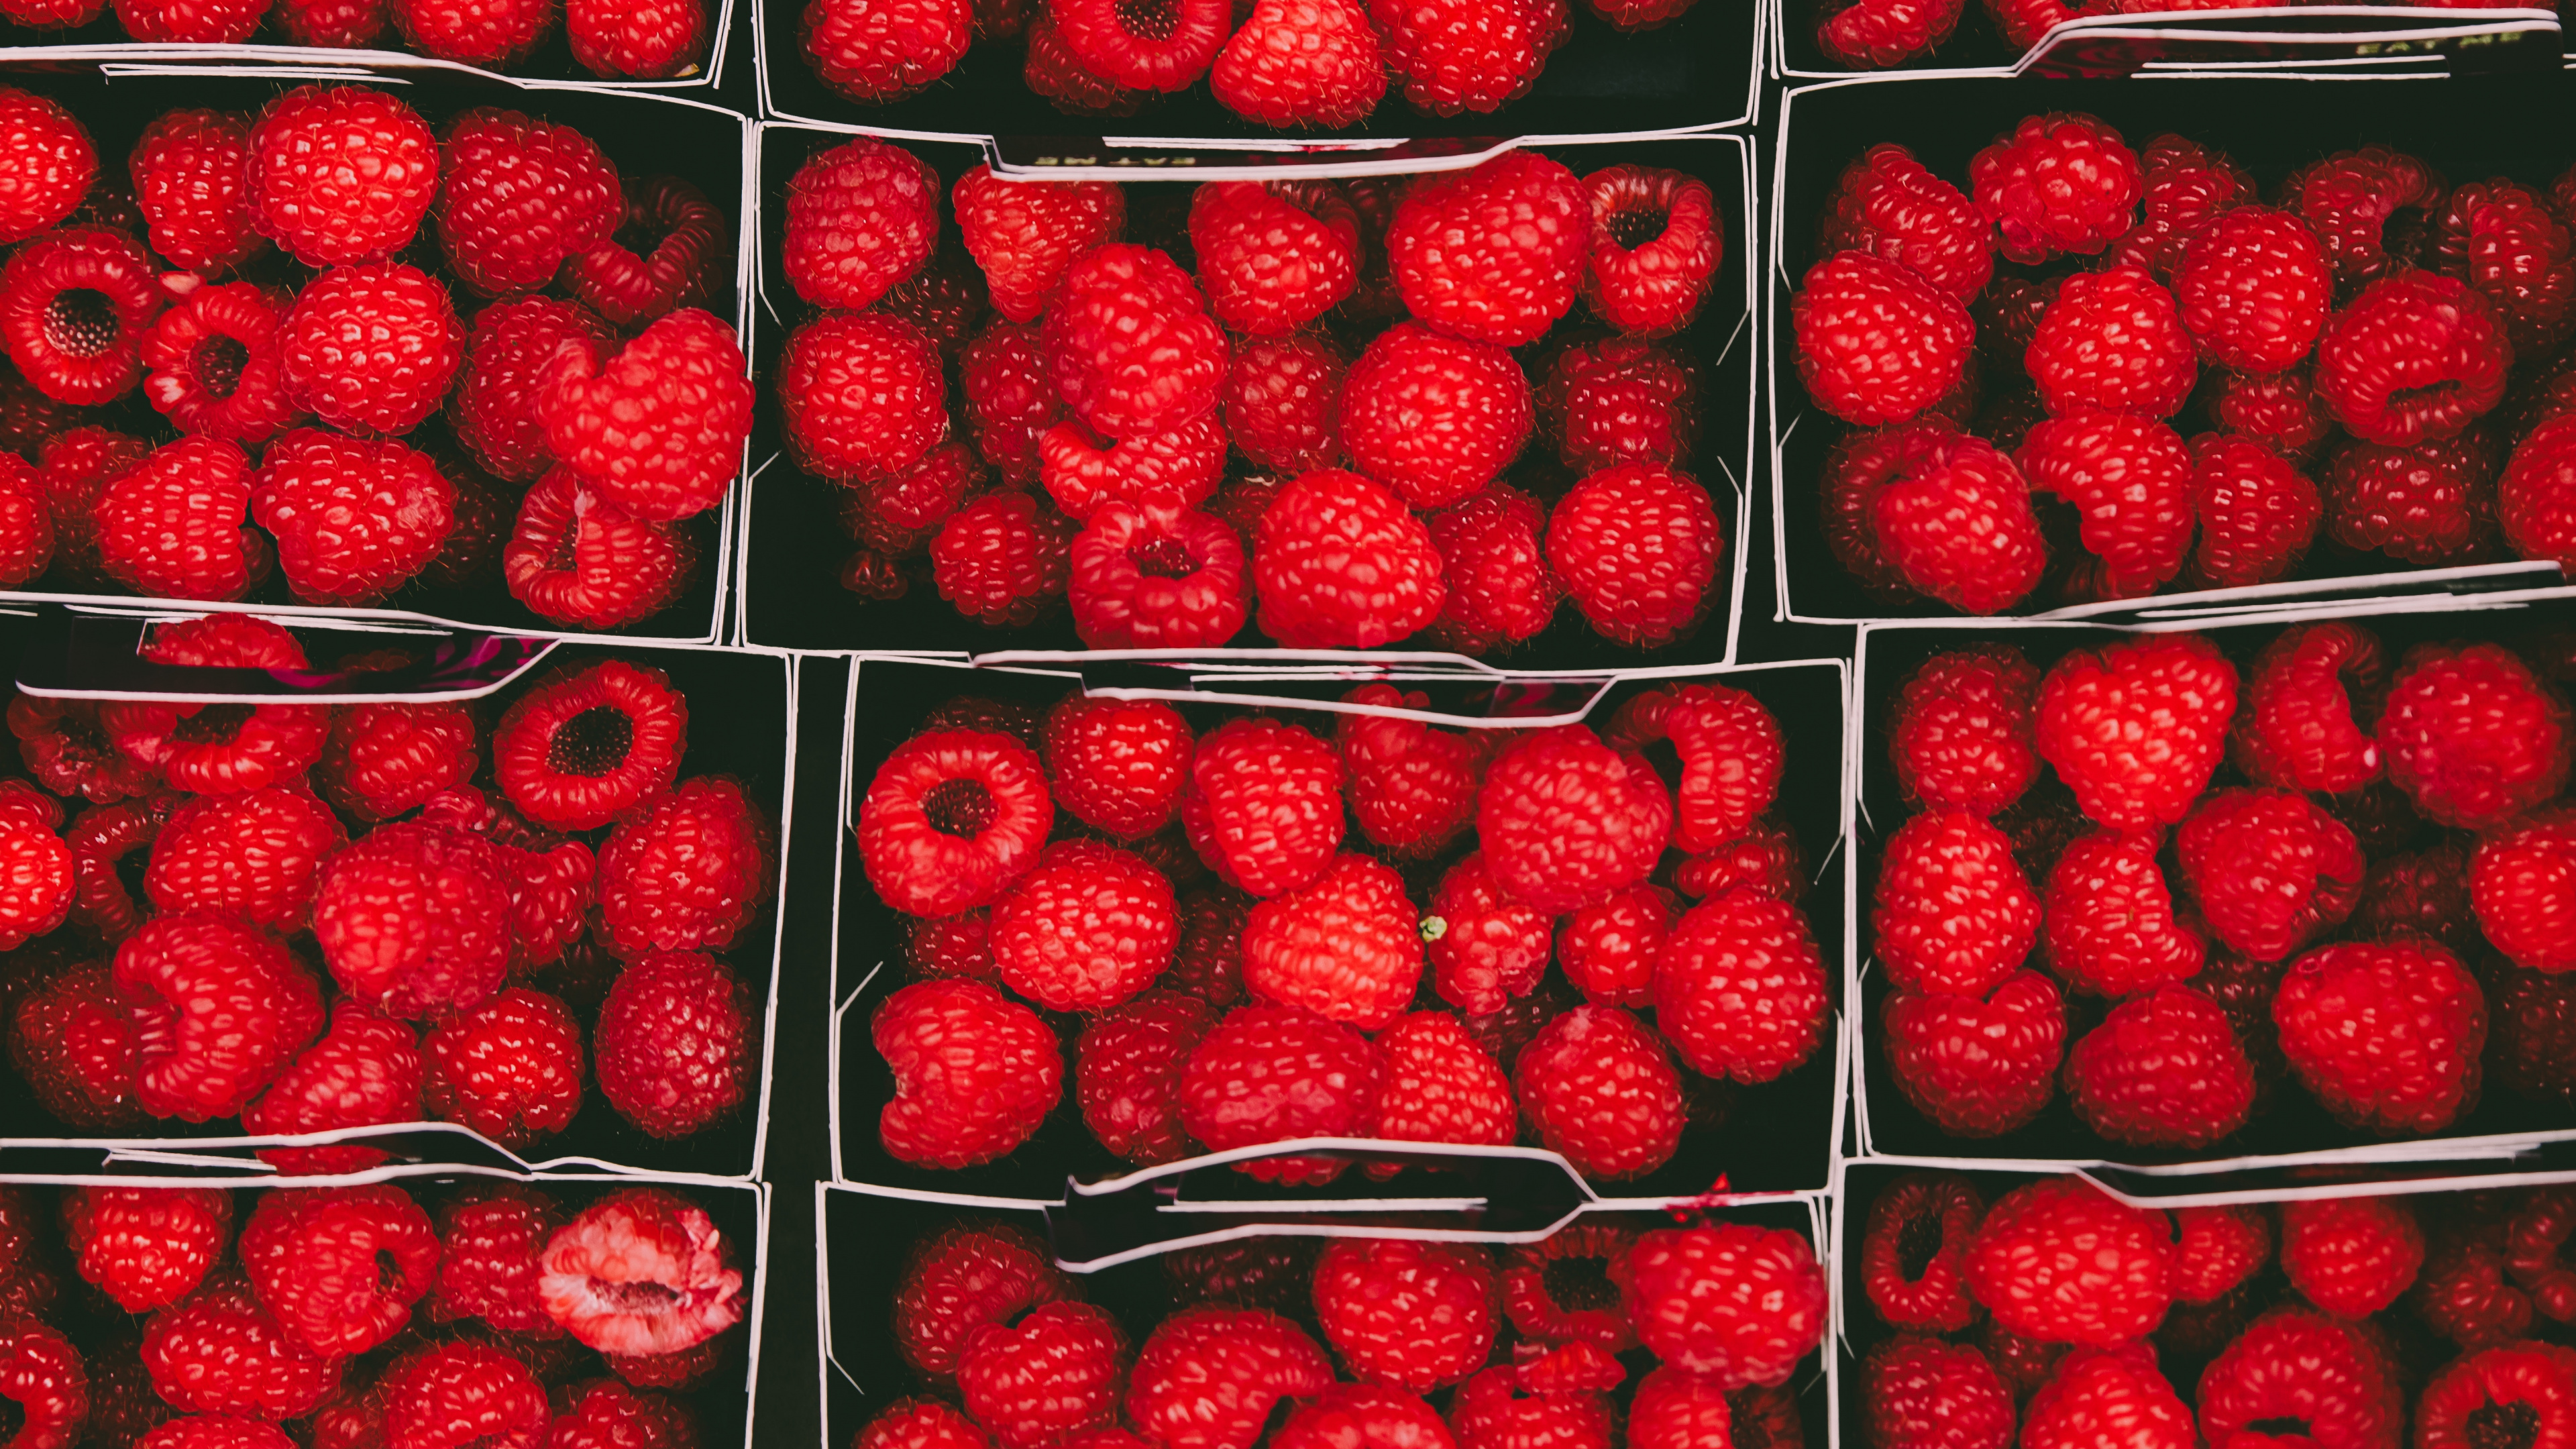 天然的食物, 当地的食物, 红色的, 无核果, 树莓 壁纸 3840x2160 允许